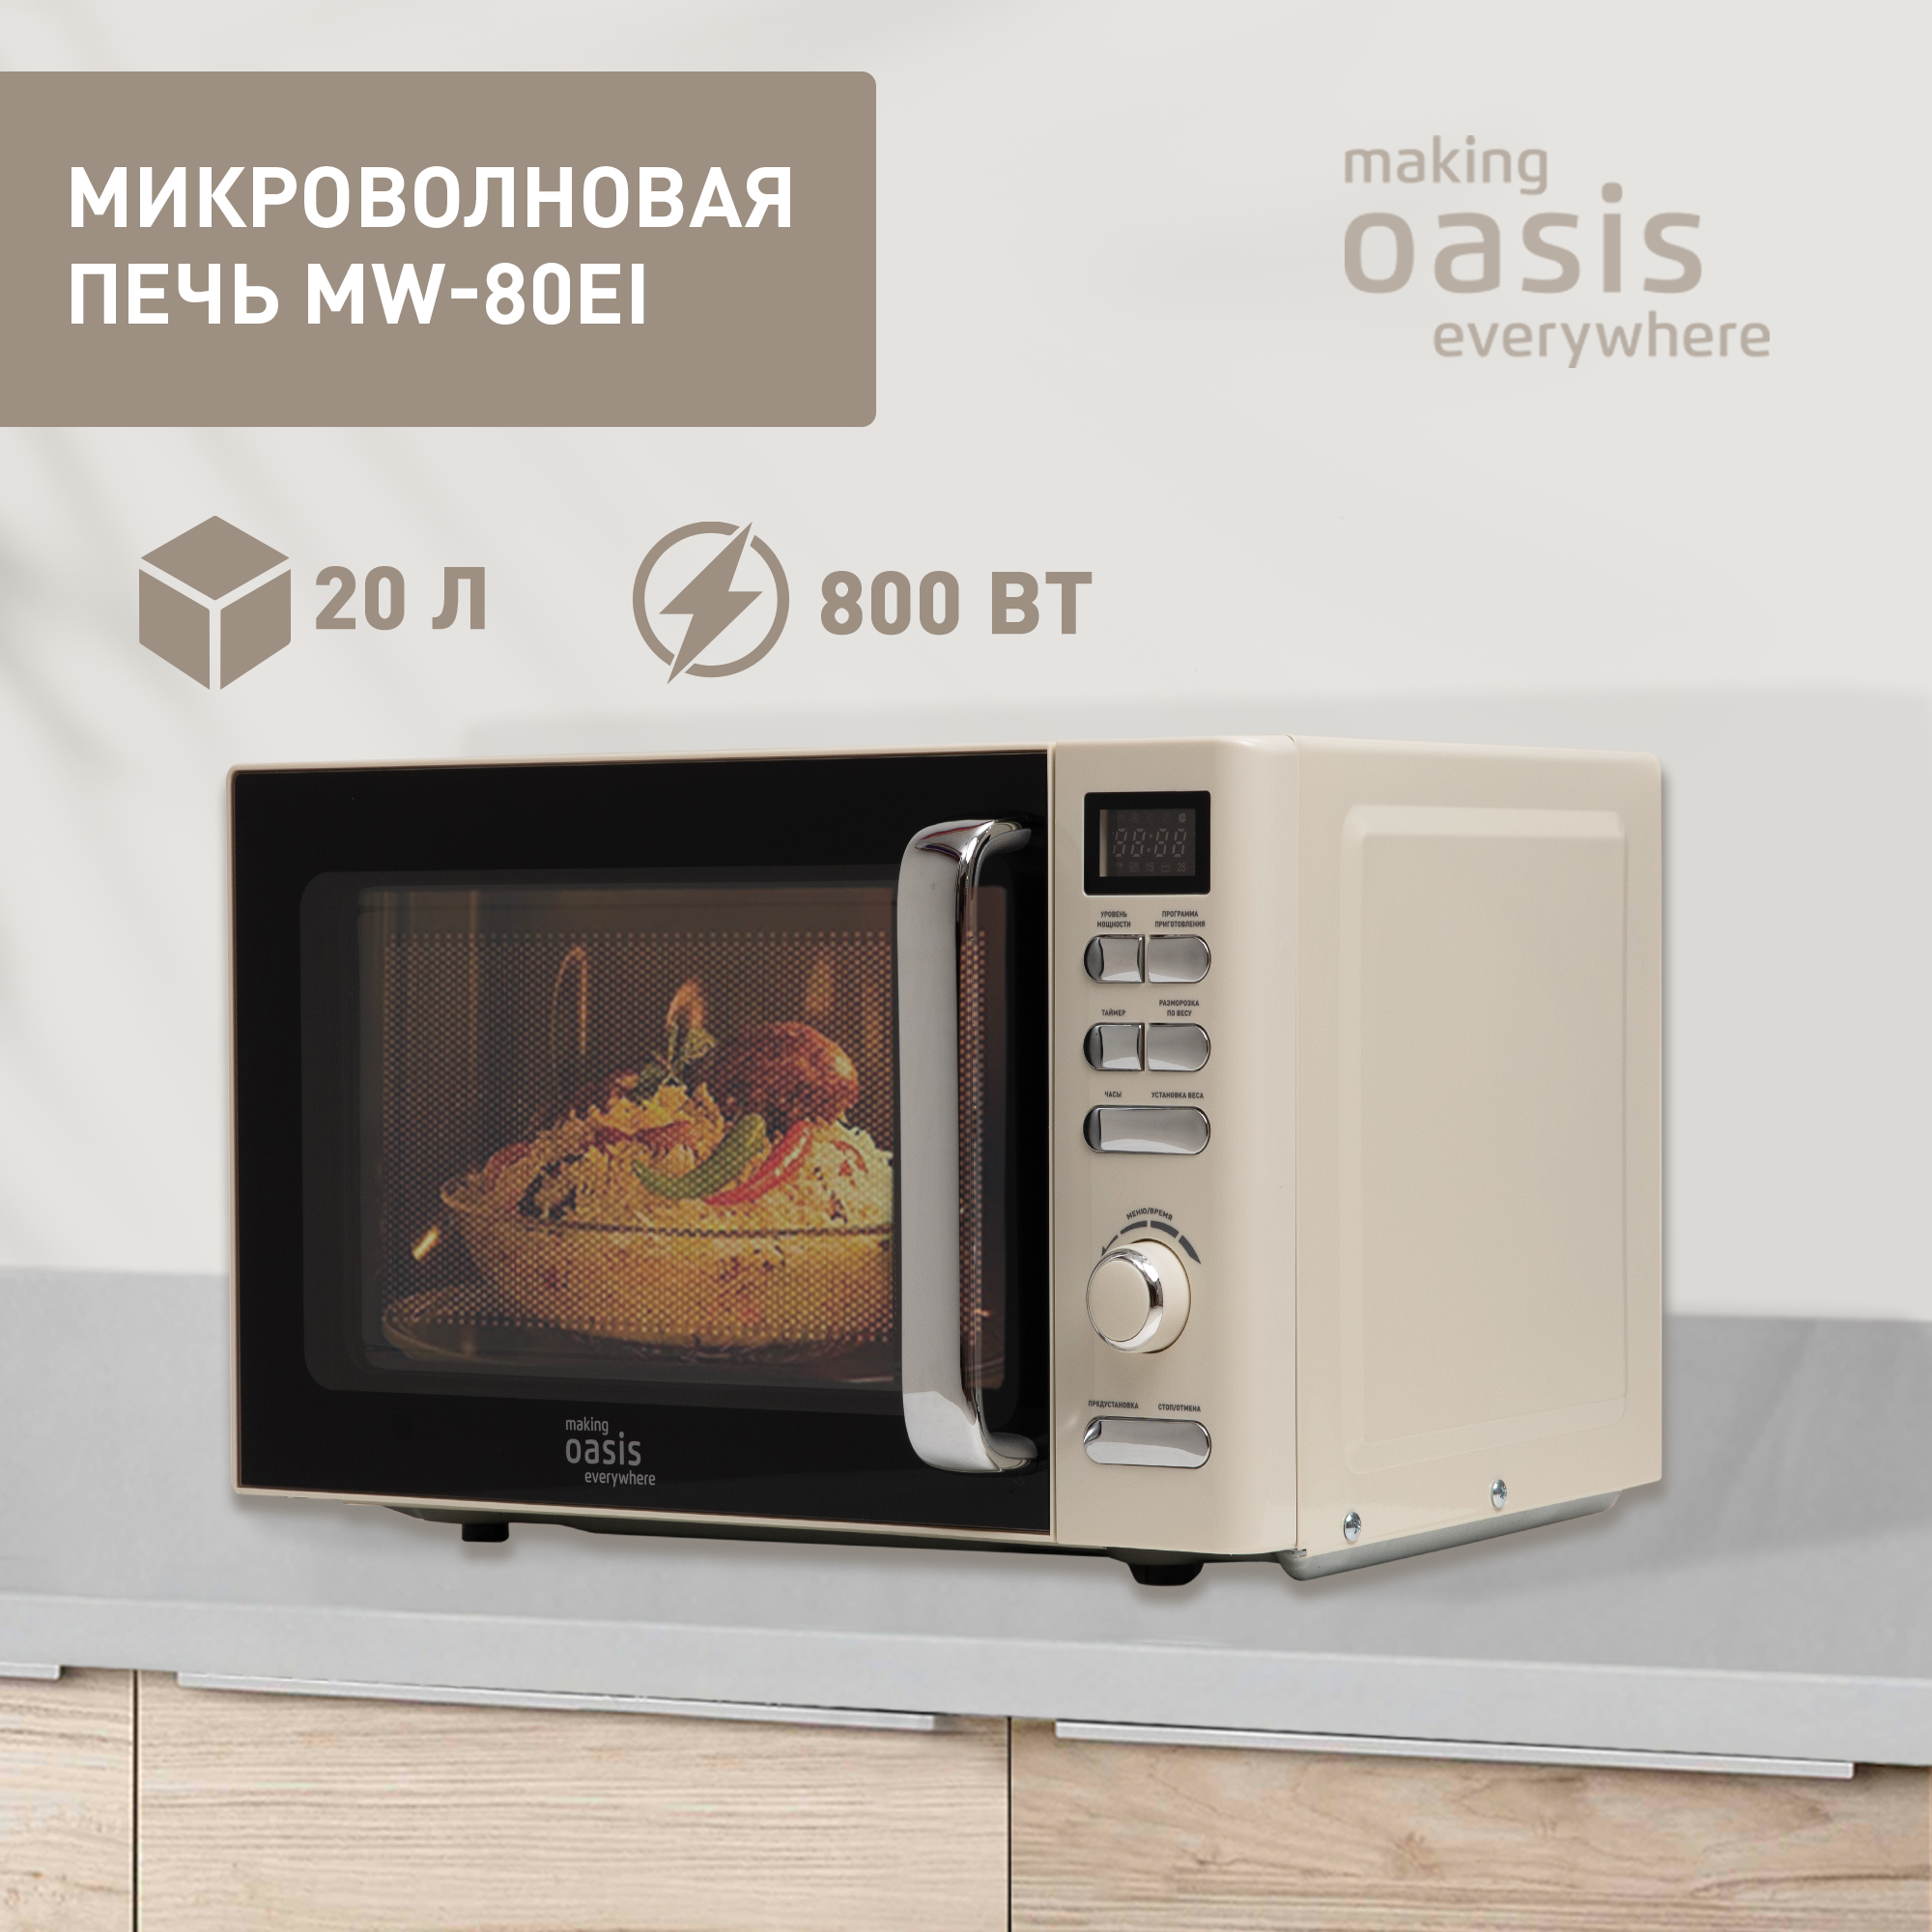 Микроволновая печь соло making oasis everywhere MW-80EI бежевая - купить в sotomania.ru, цена на Мегамаркет